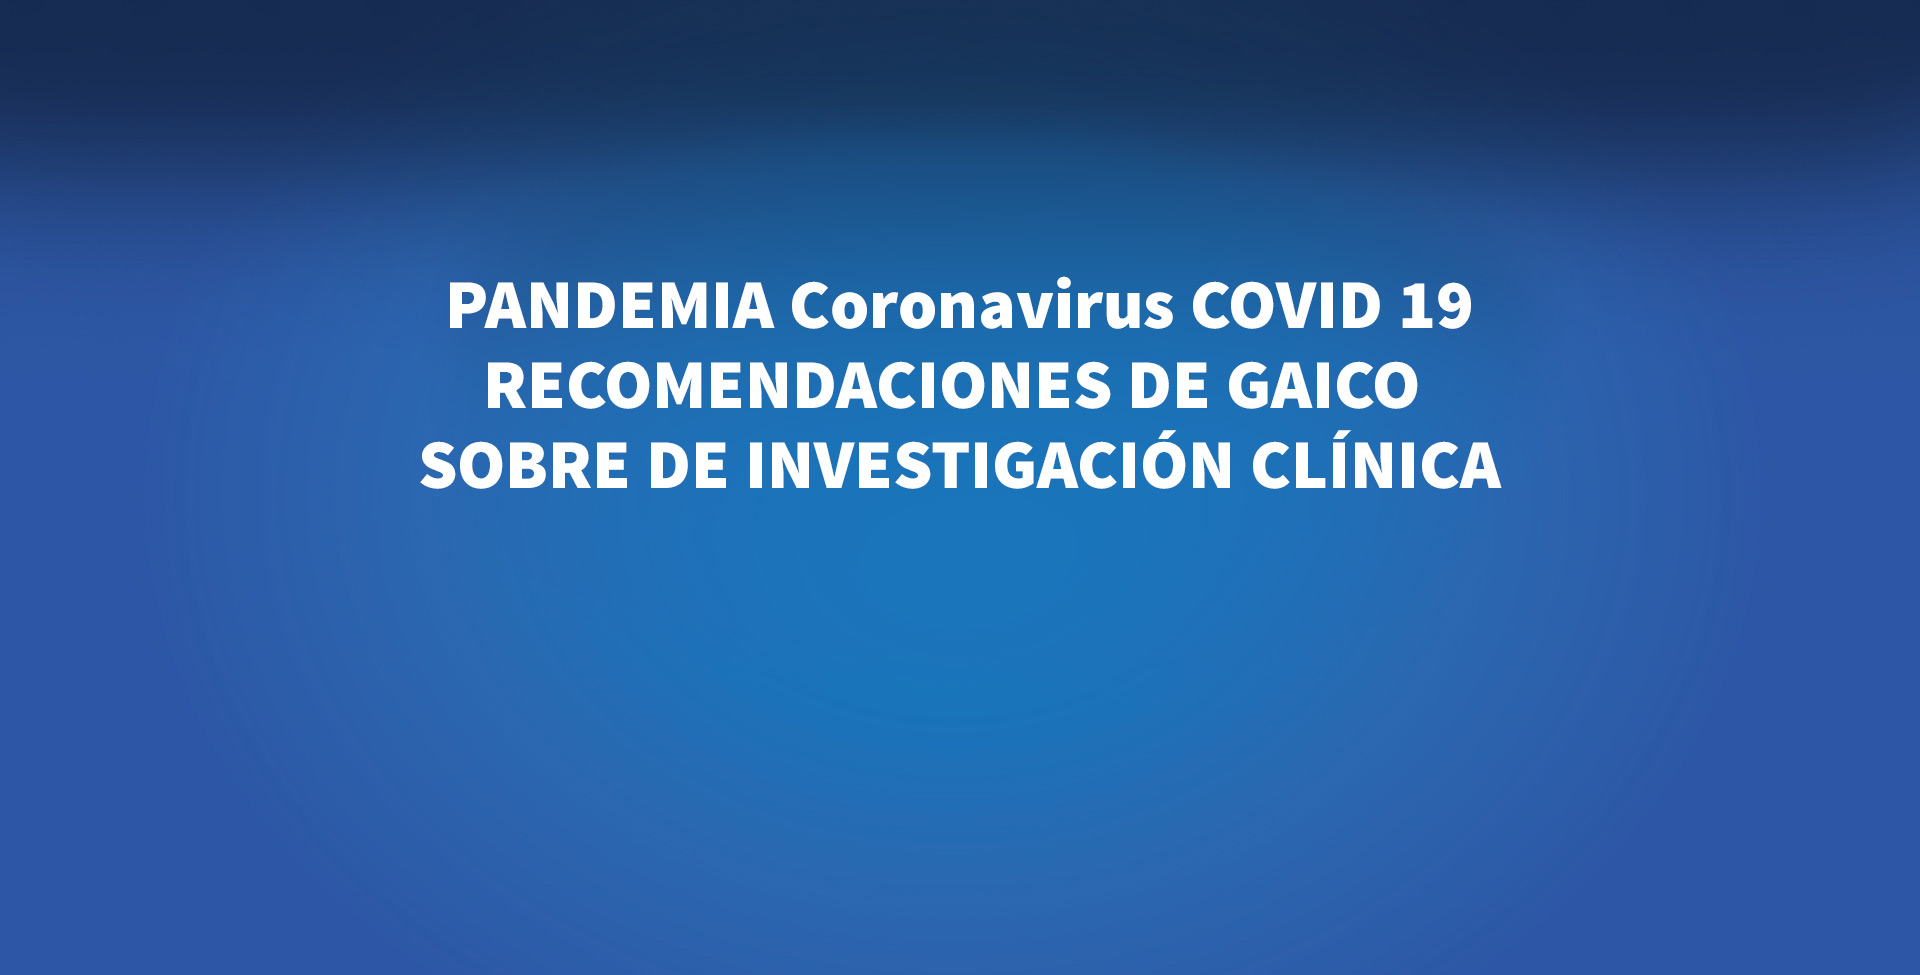 PANDEMIA Coronavirus COVID 19 - RECOMENDACIONES DE GAICO SOBRE DE INVESTIGACIÓN CLÍNICA